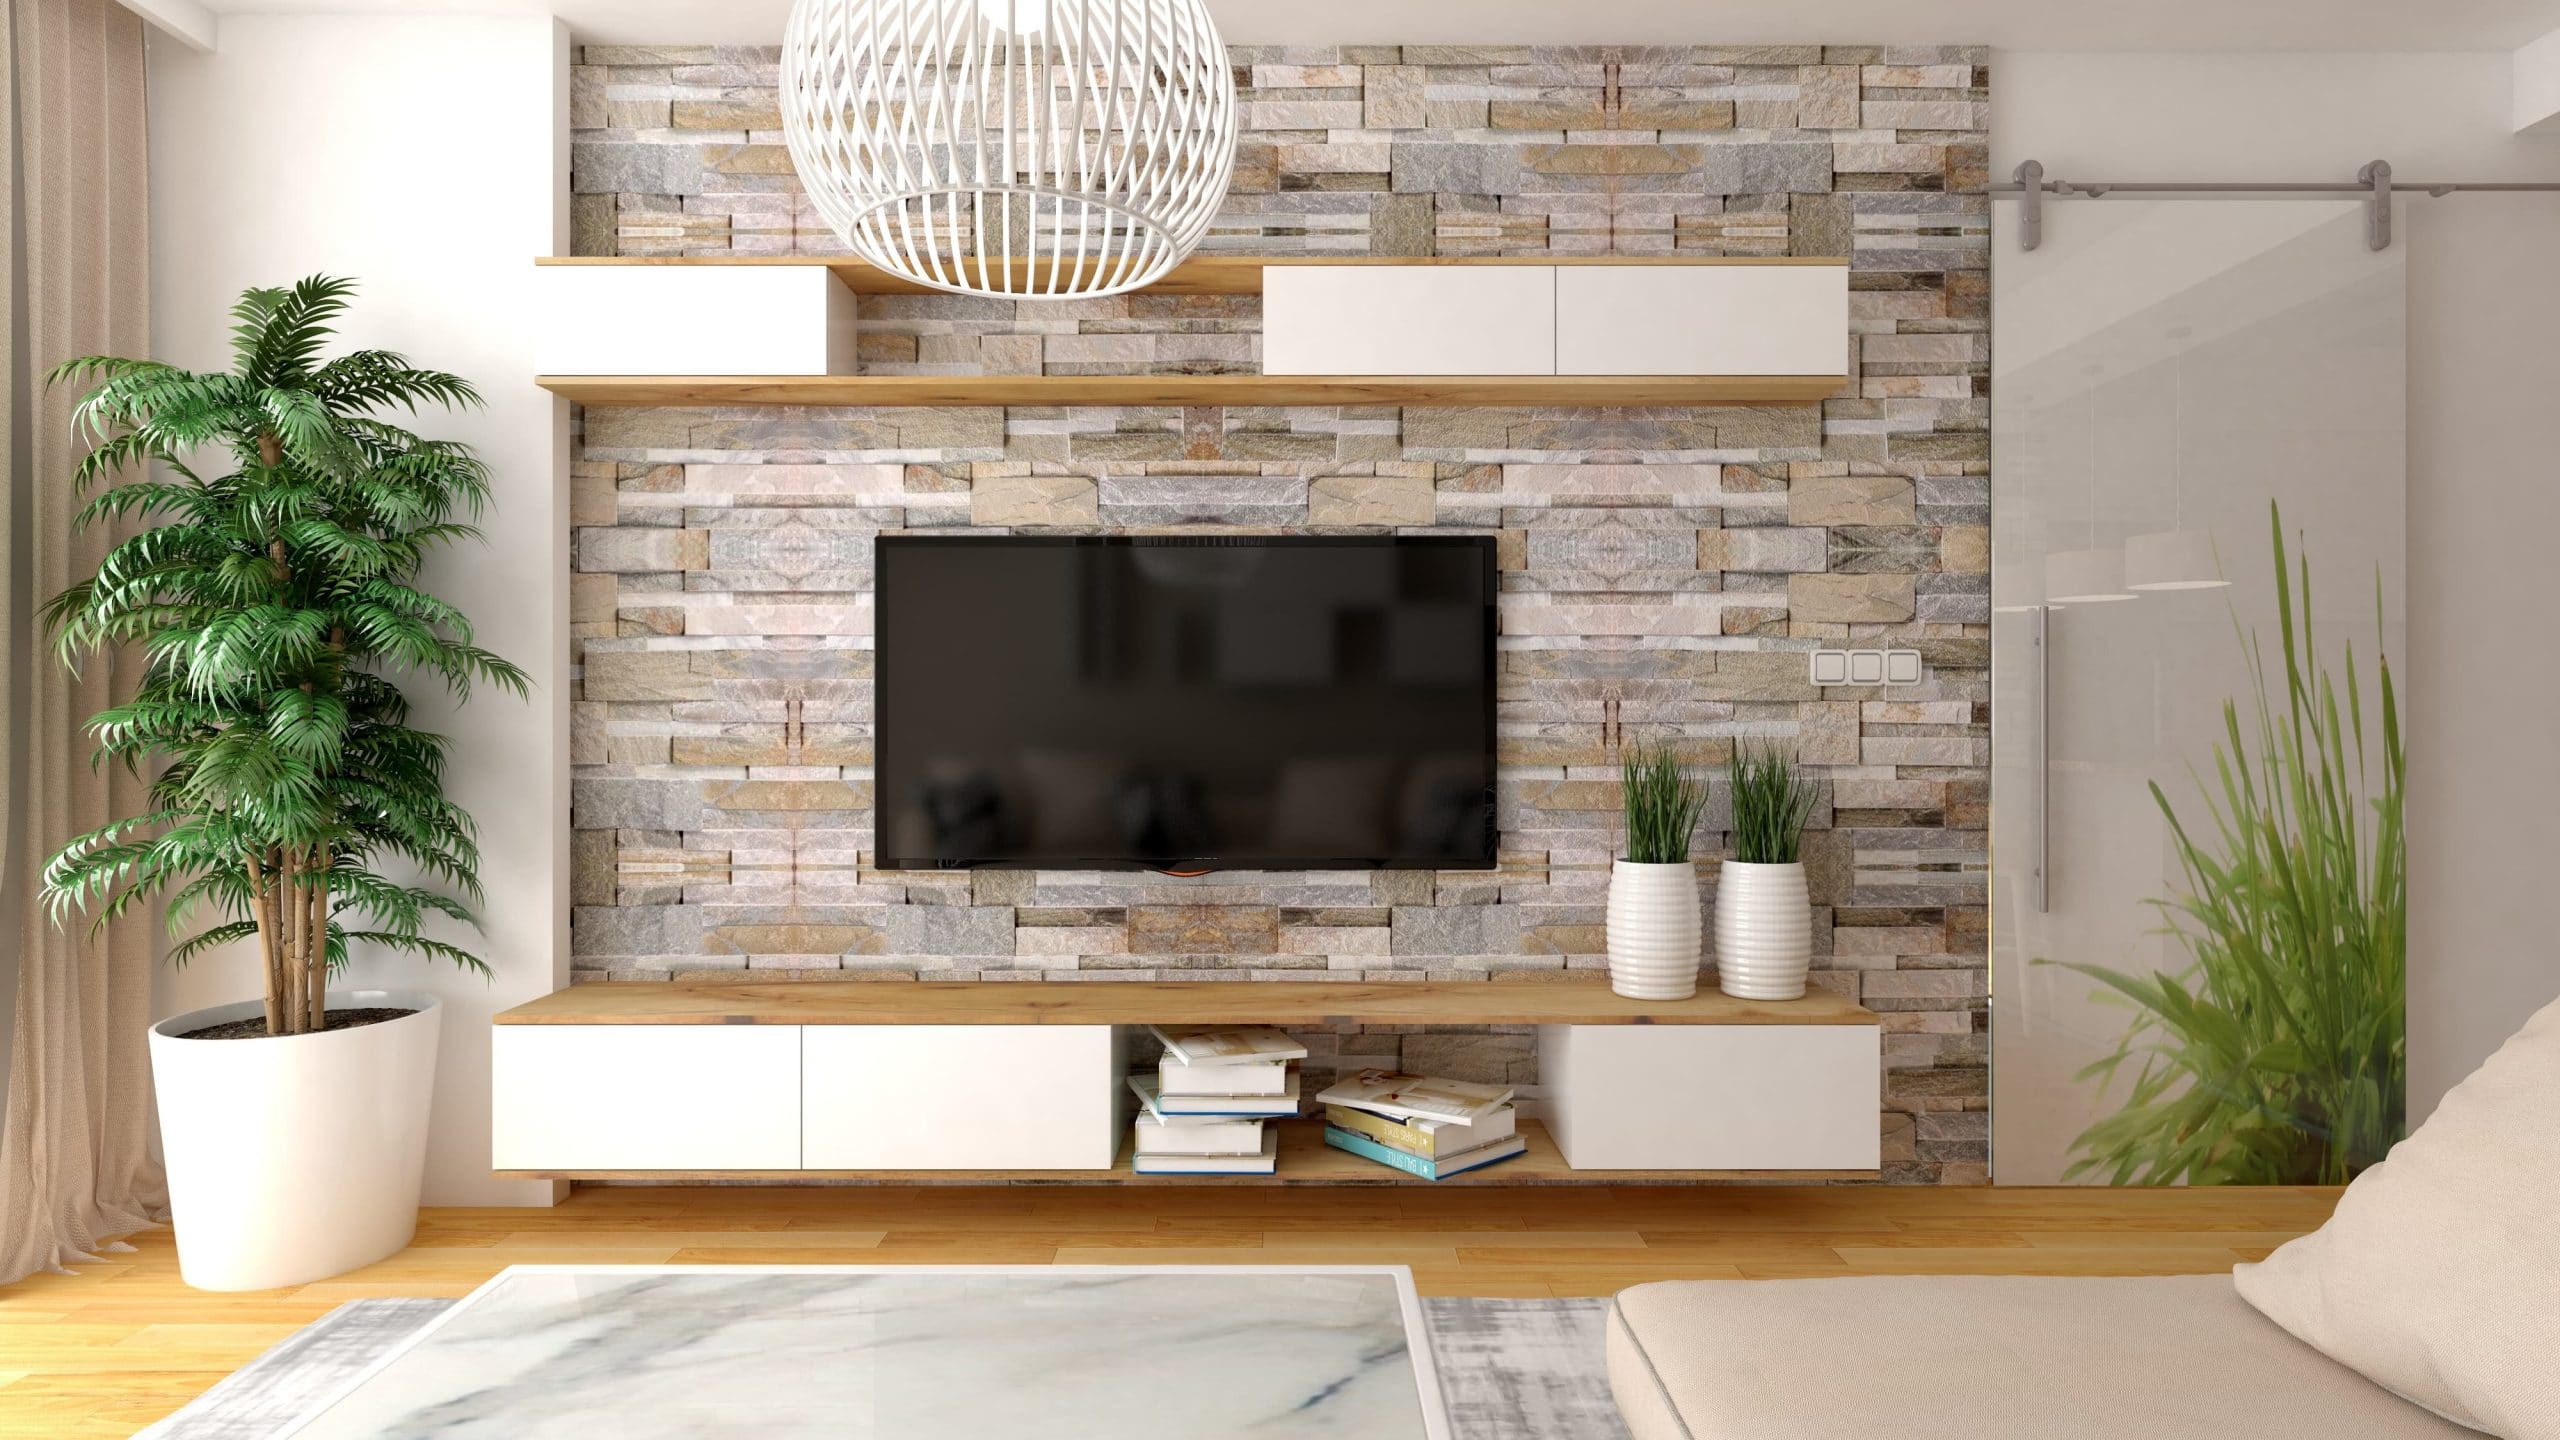 15 ideas para decorar la pared de la tele en cualquier ambiente